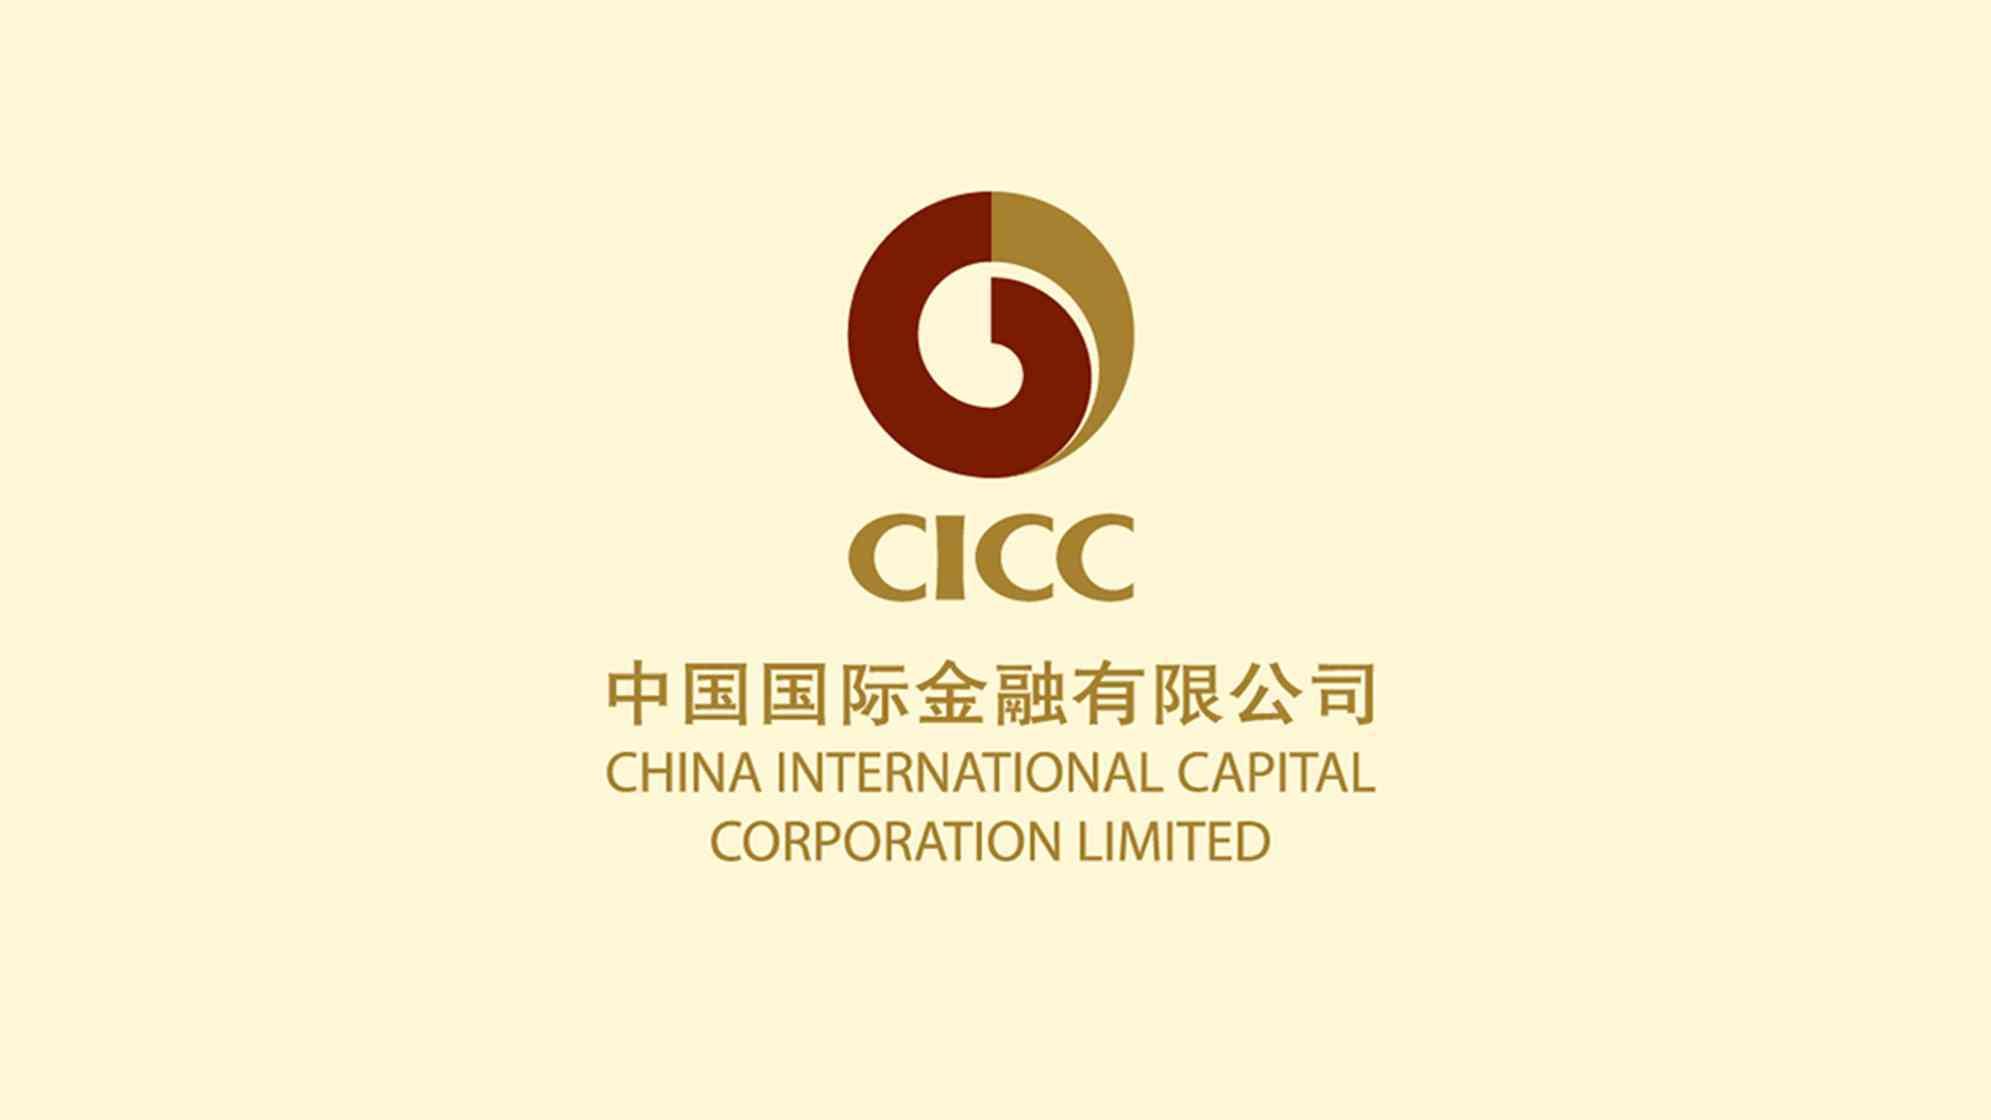 中金CICC金融公司logo设计图片素材